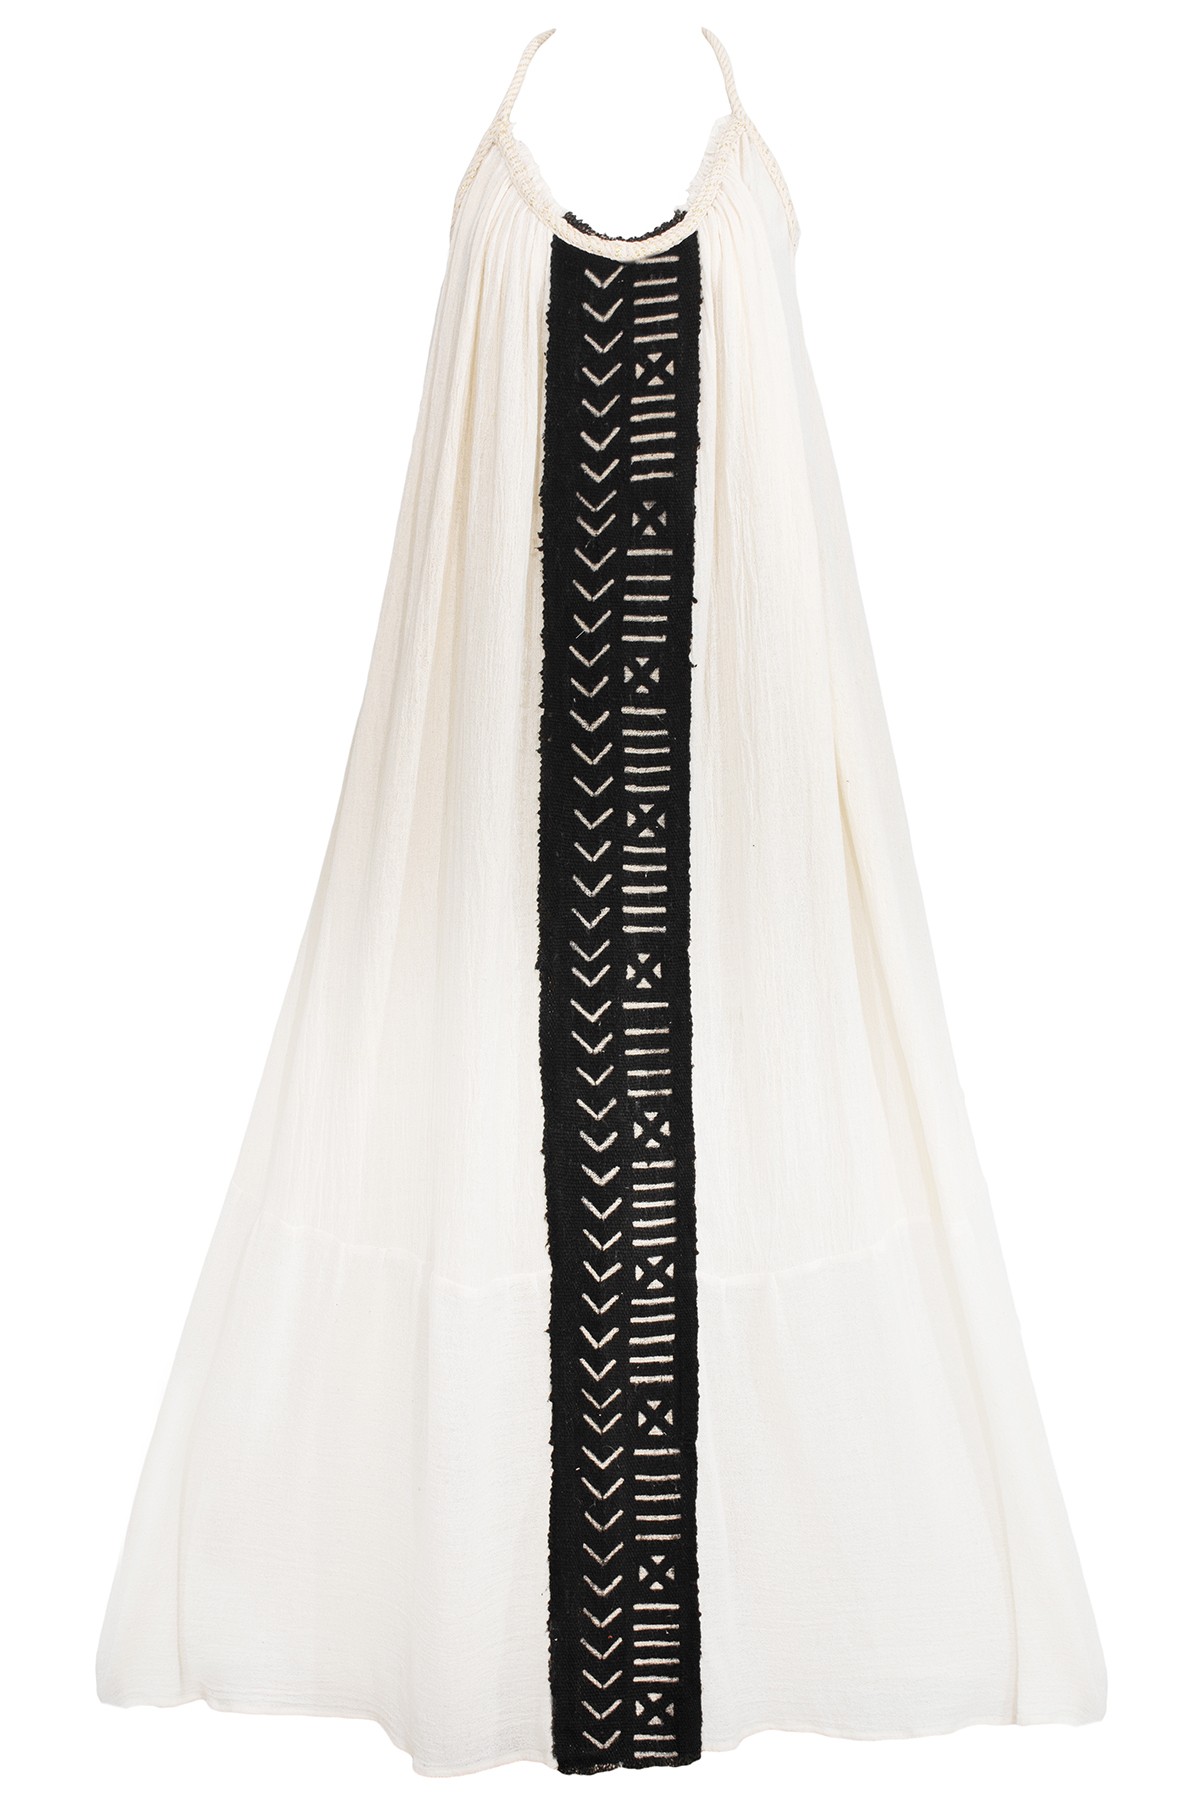 100% Ödemiş Hand Woven (Dastar) Africa Woven Stripe Detailed Backless Dress